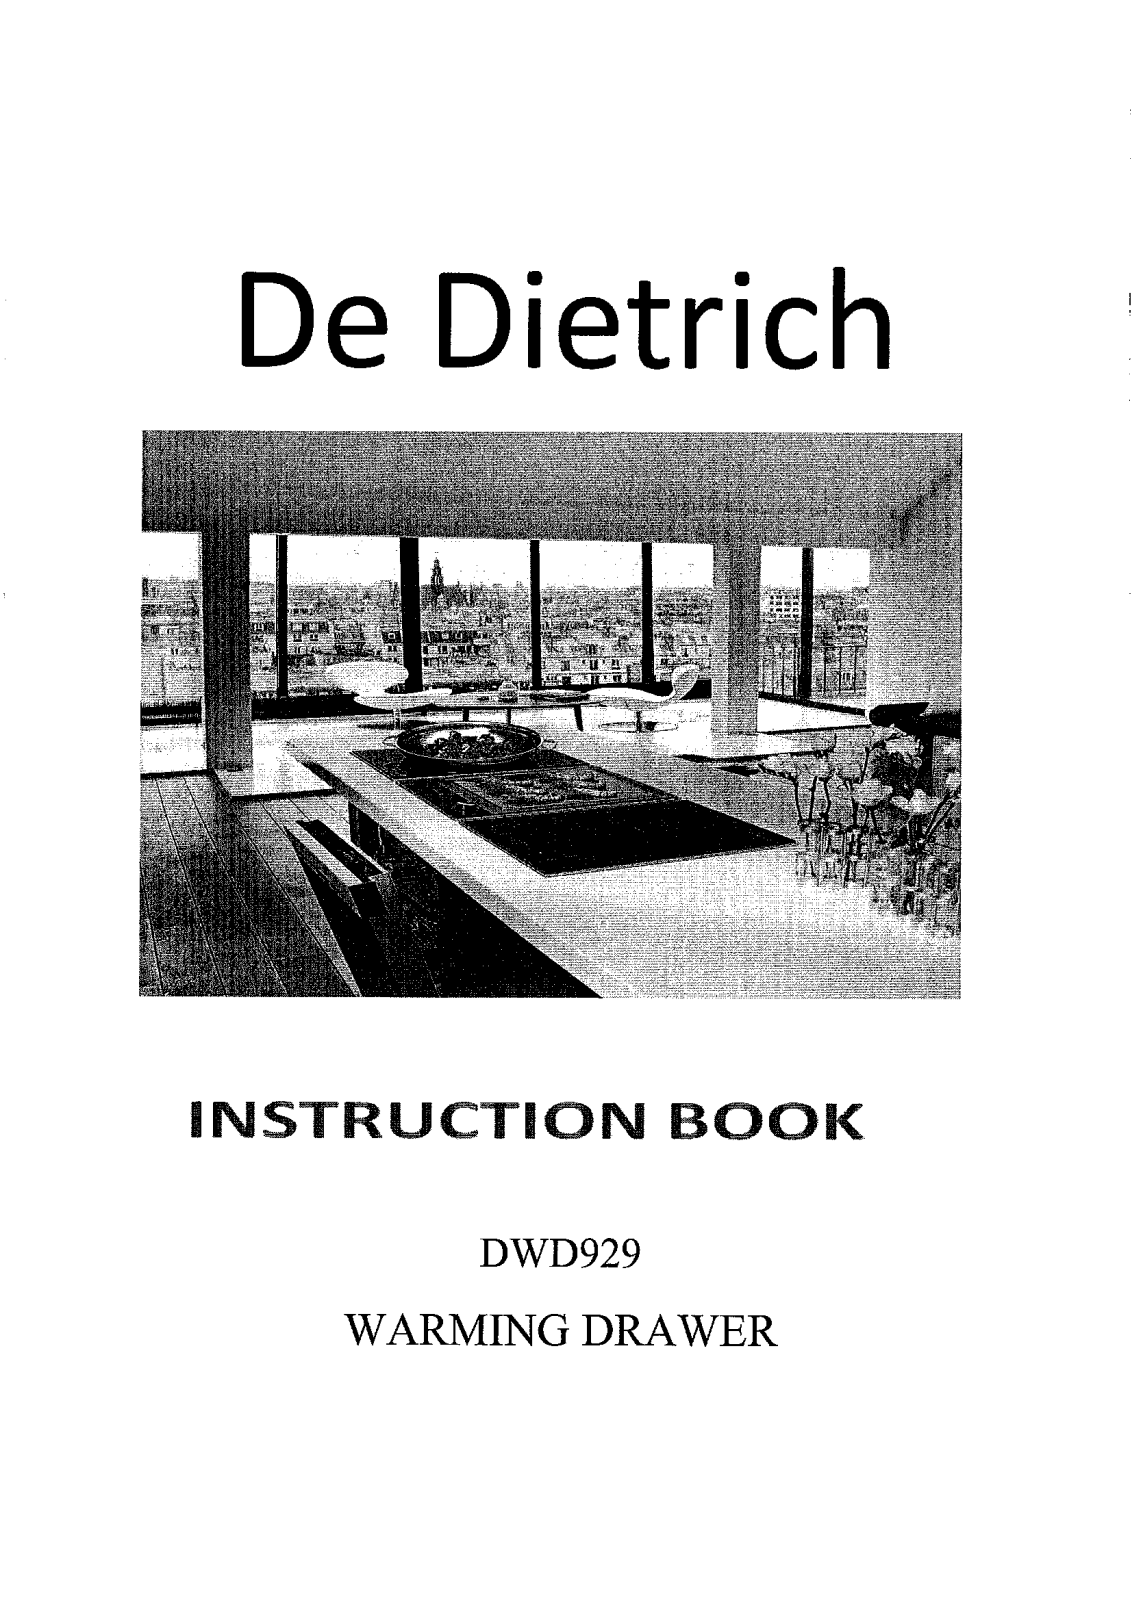 De dietrich DRN1027IS Manual